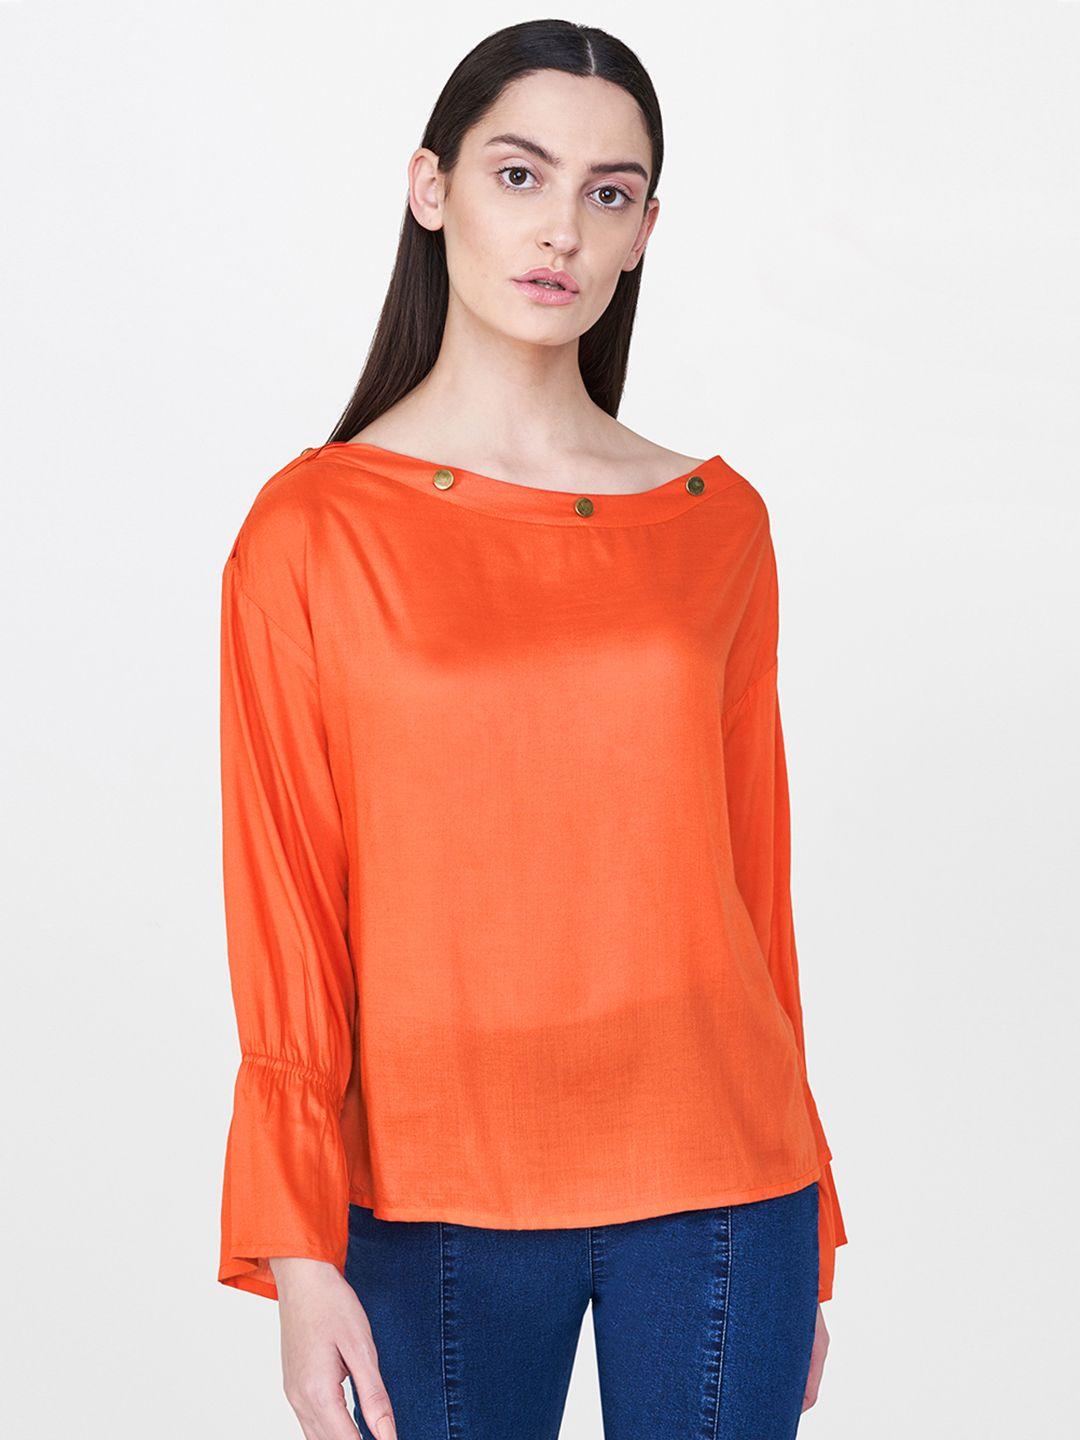 and women orange solid semi sheer top